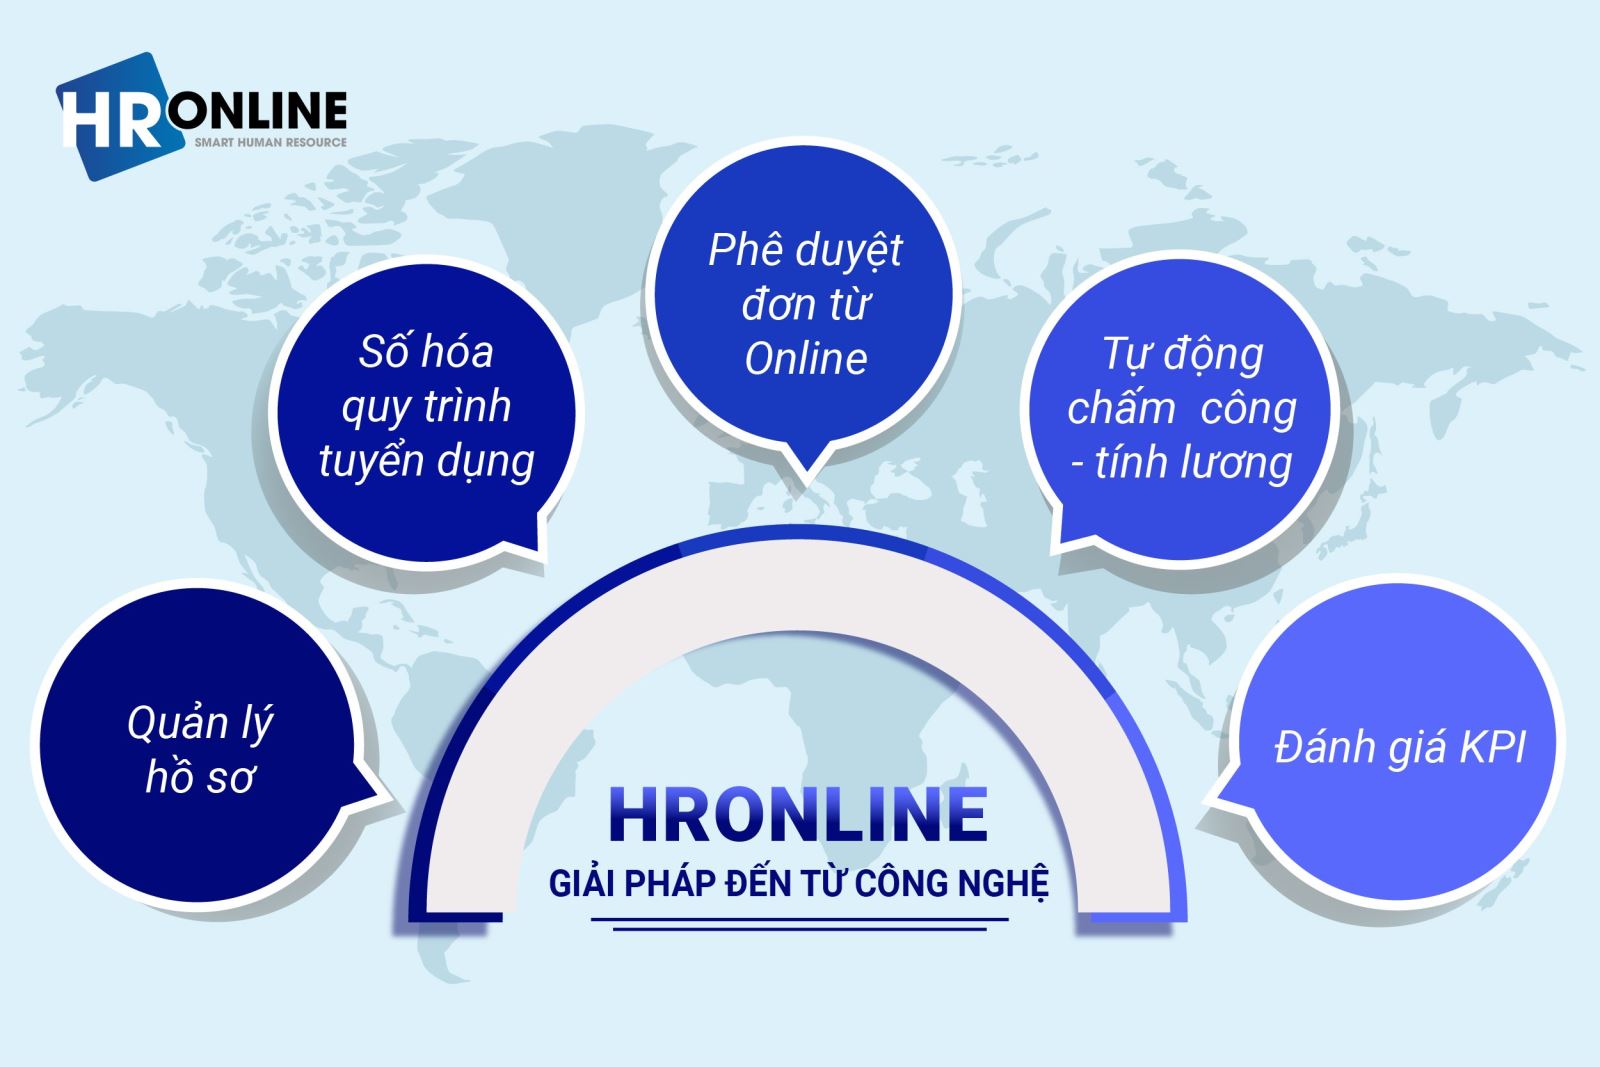 HrOnline - Giải pháp đến từ công nghệ